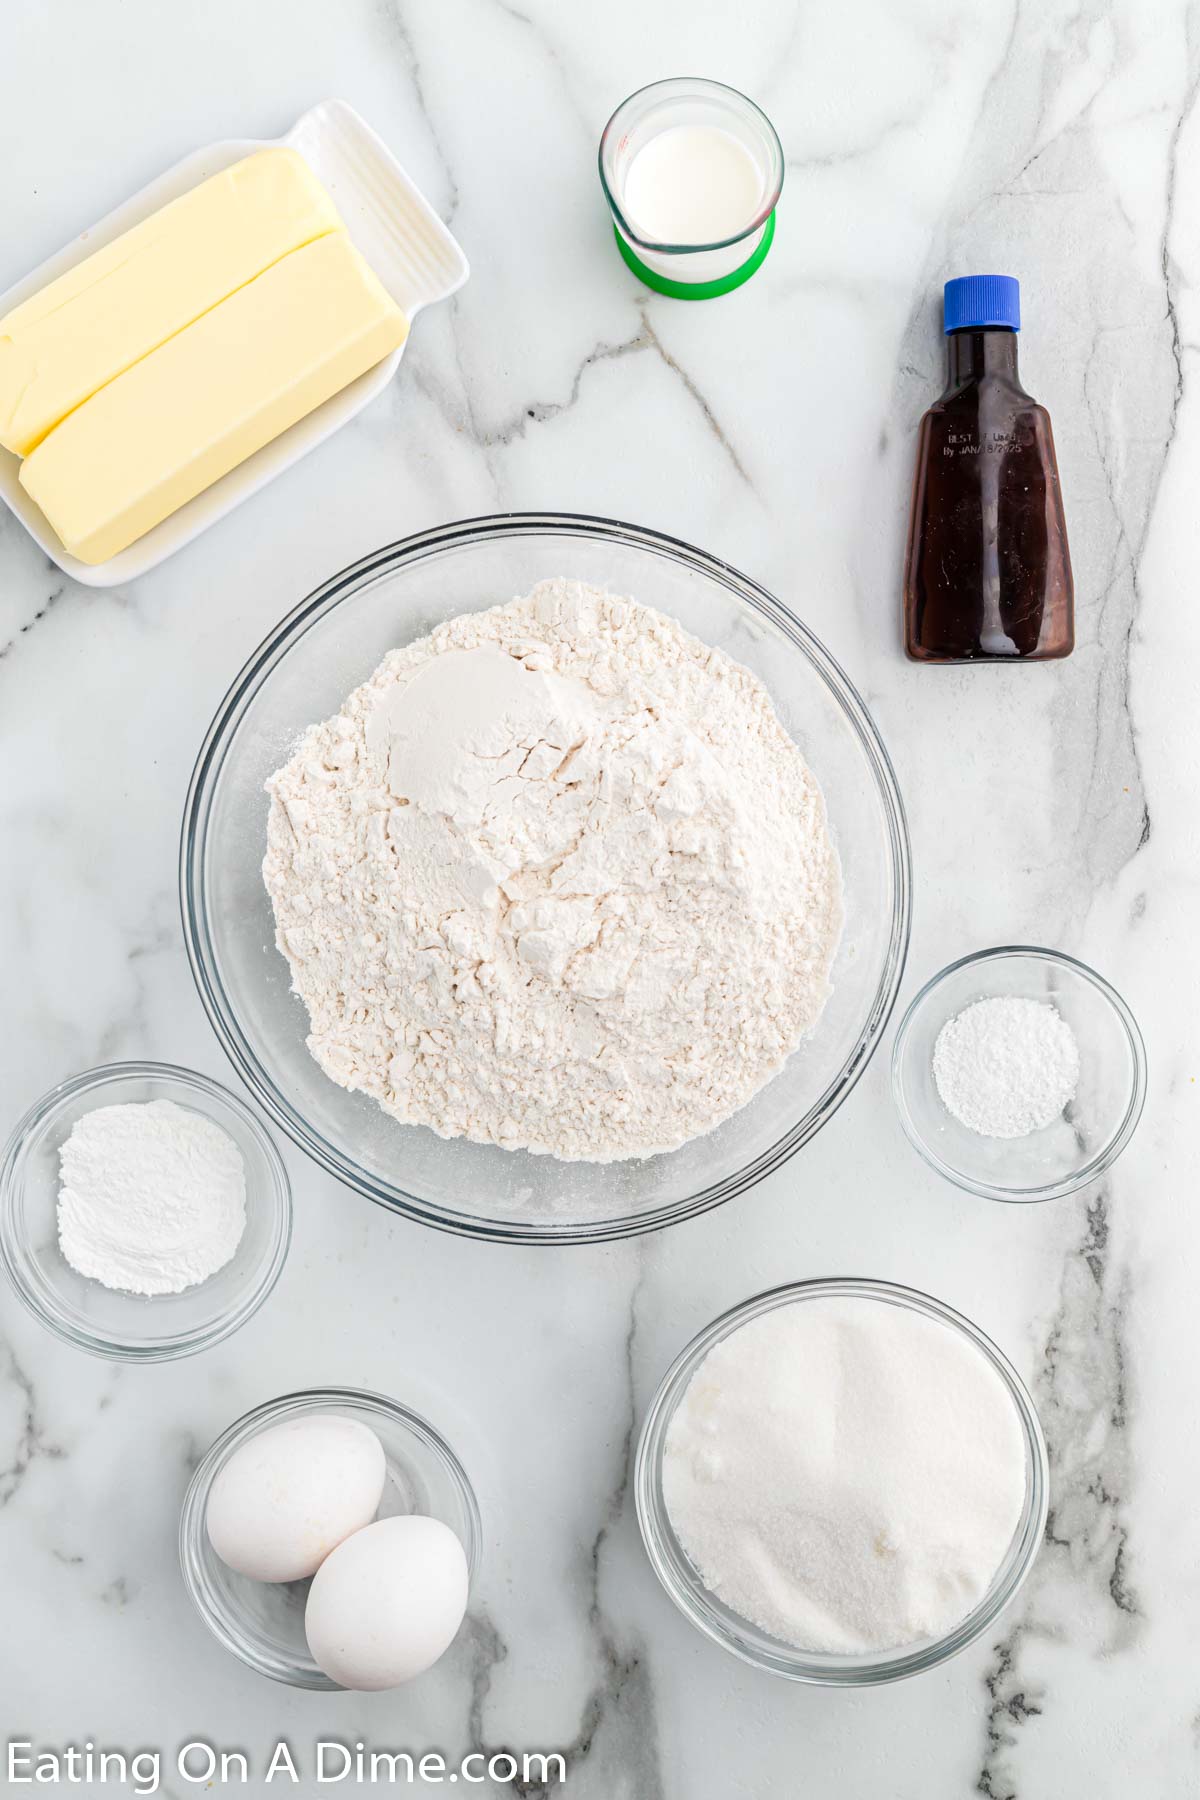 Ingredients needed - butter, sugar, eggs, vanilla, milk, flour, baking powder, salt